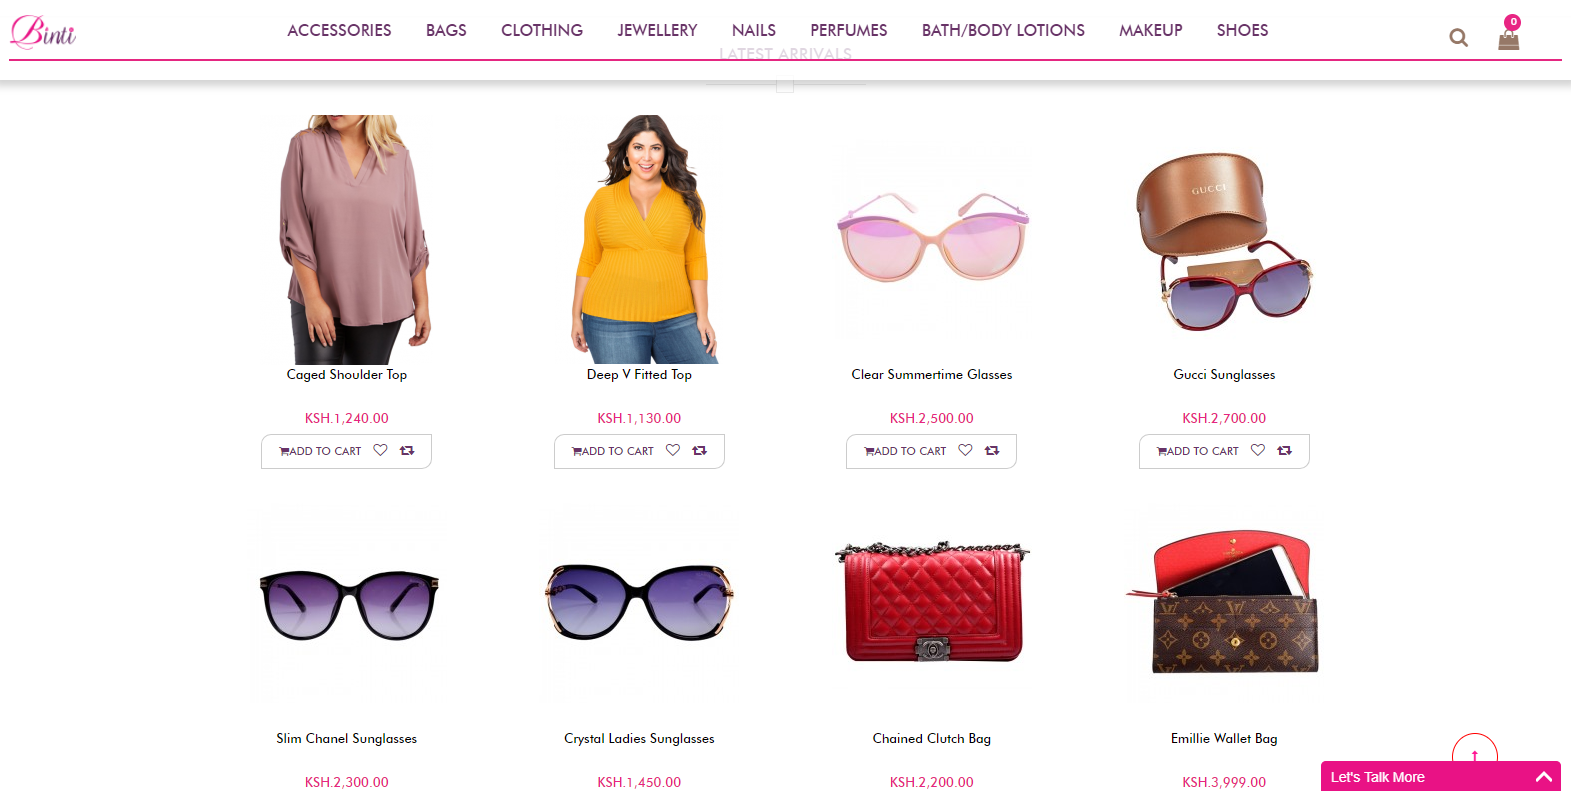 Binti Wholesale Online Shop SEO Content Marketing Project - Shop